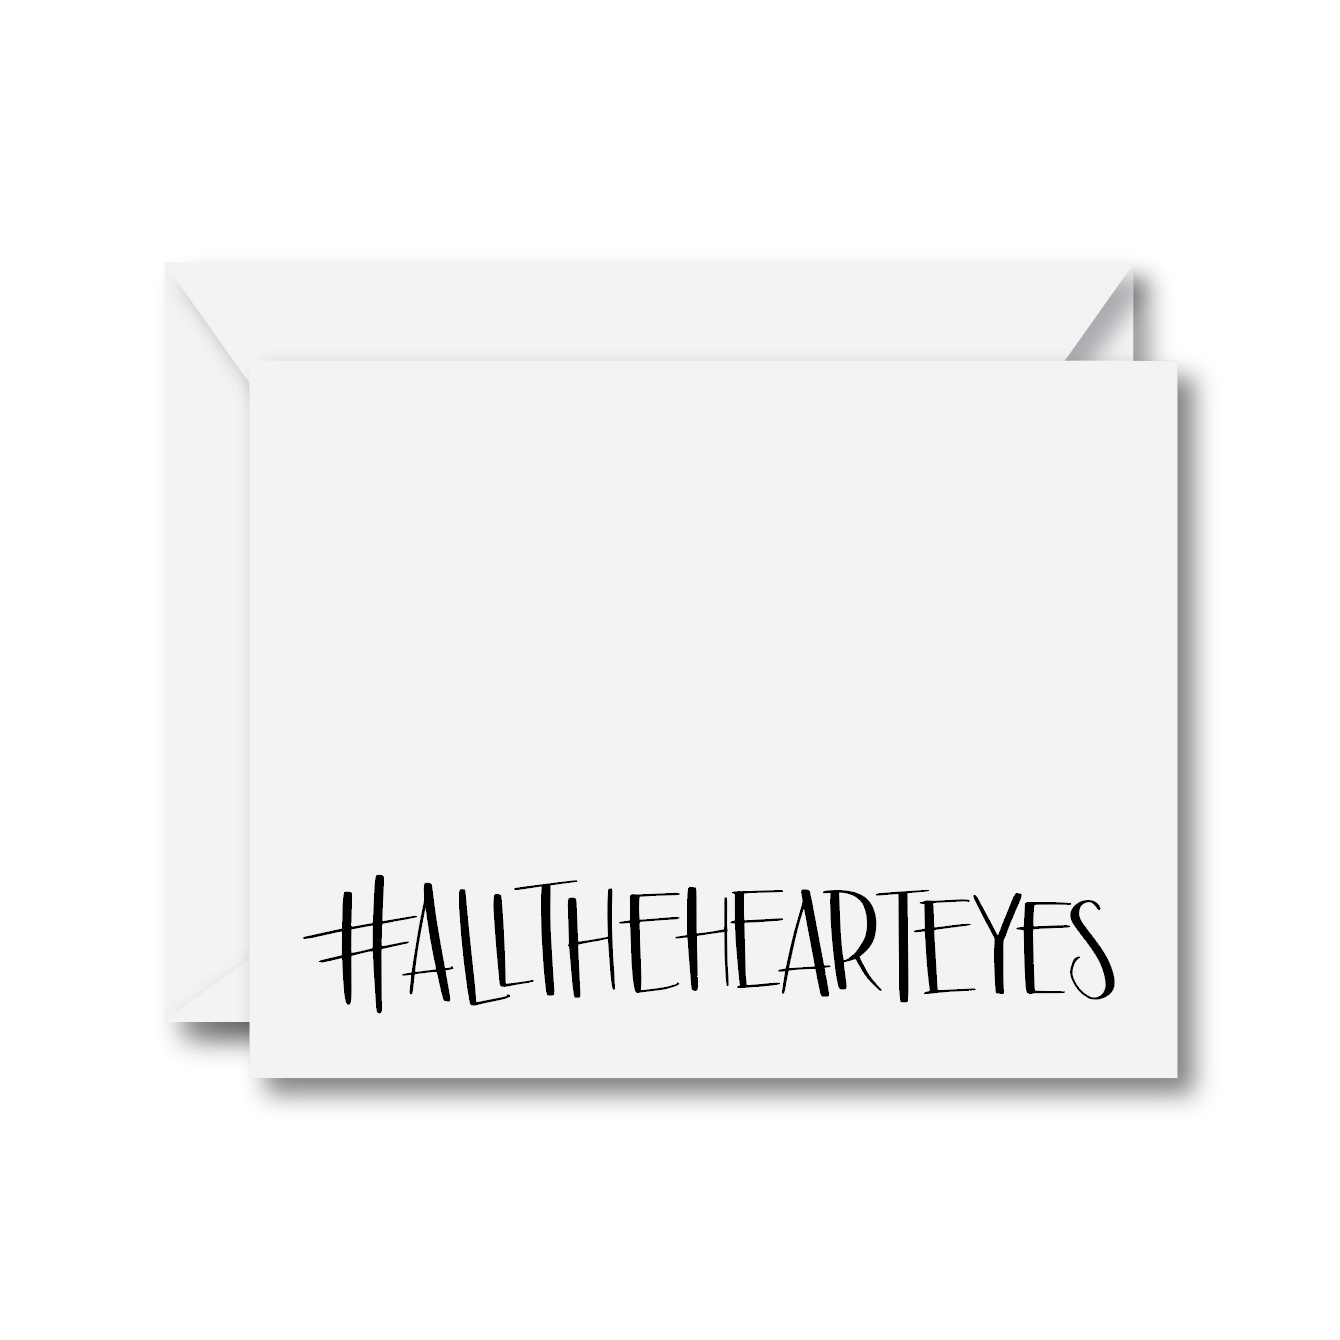 #allthehearteyes Card